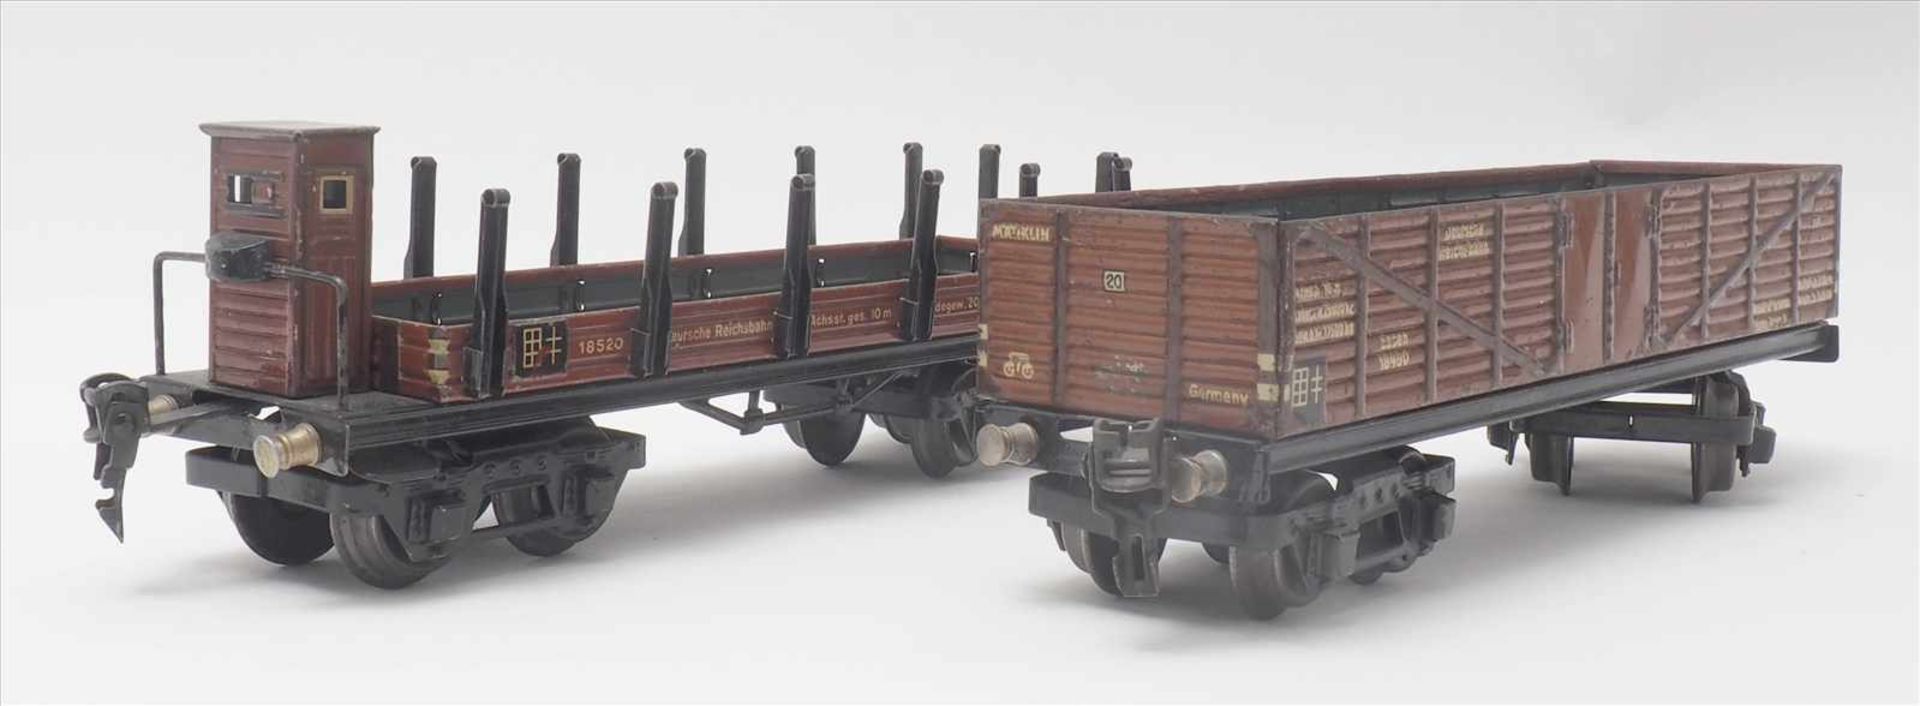 Zwei GüterwagenMärklin Spur 0. 1930-er Jahre. Hochbordwagen und Rungenwagen mit Bremserhaus.